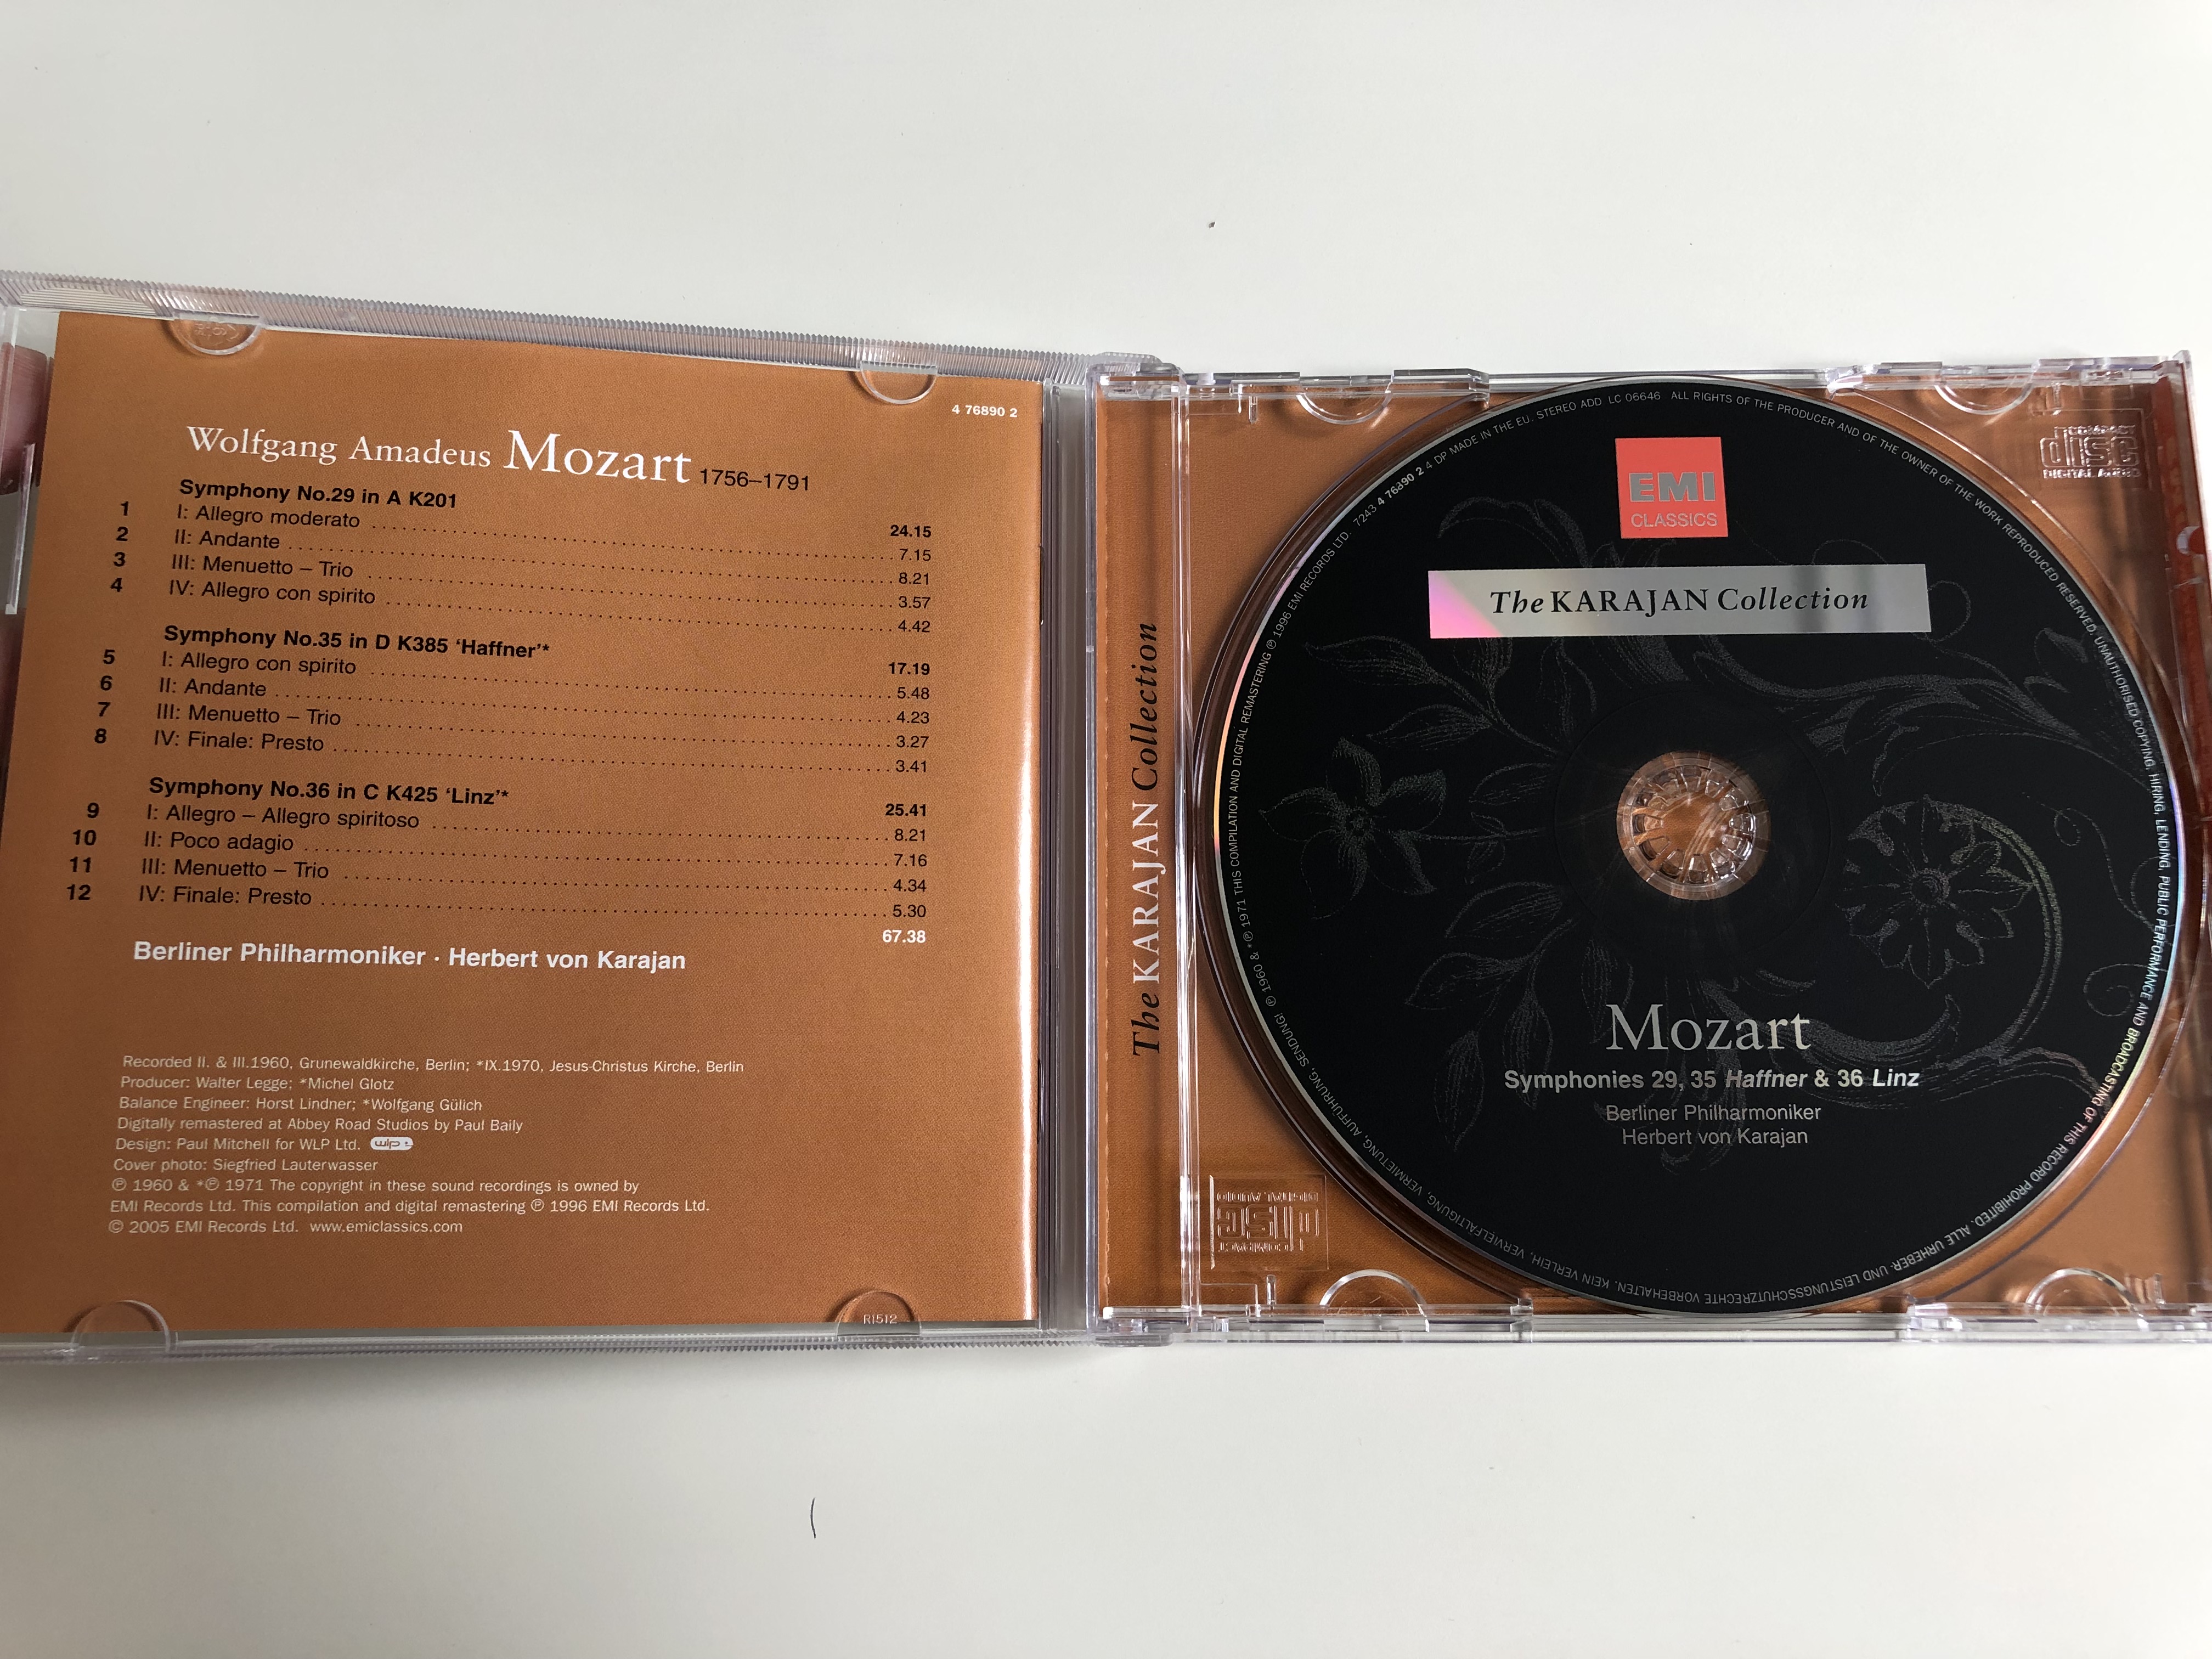 mozart-symphonies-29-35-haffner-36-linz-berliner-philharmoniker-conducted-by-herbert-von-karajan-emi-classics-the-karajan-collection-audio-cd-2005-2-.jpg